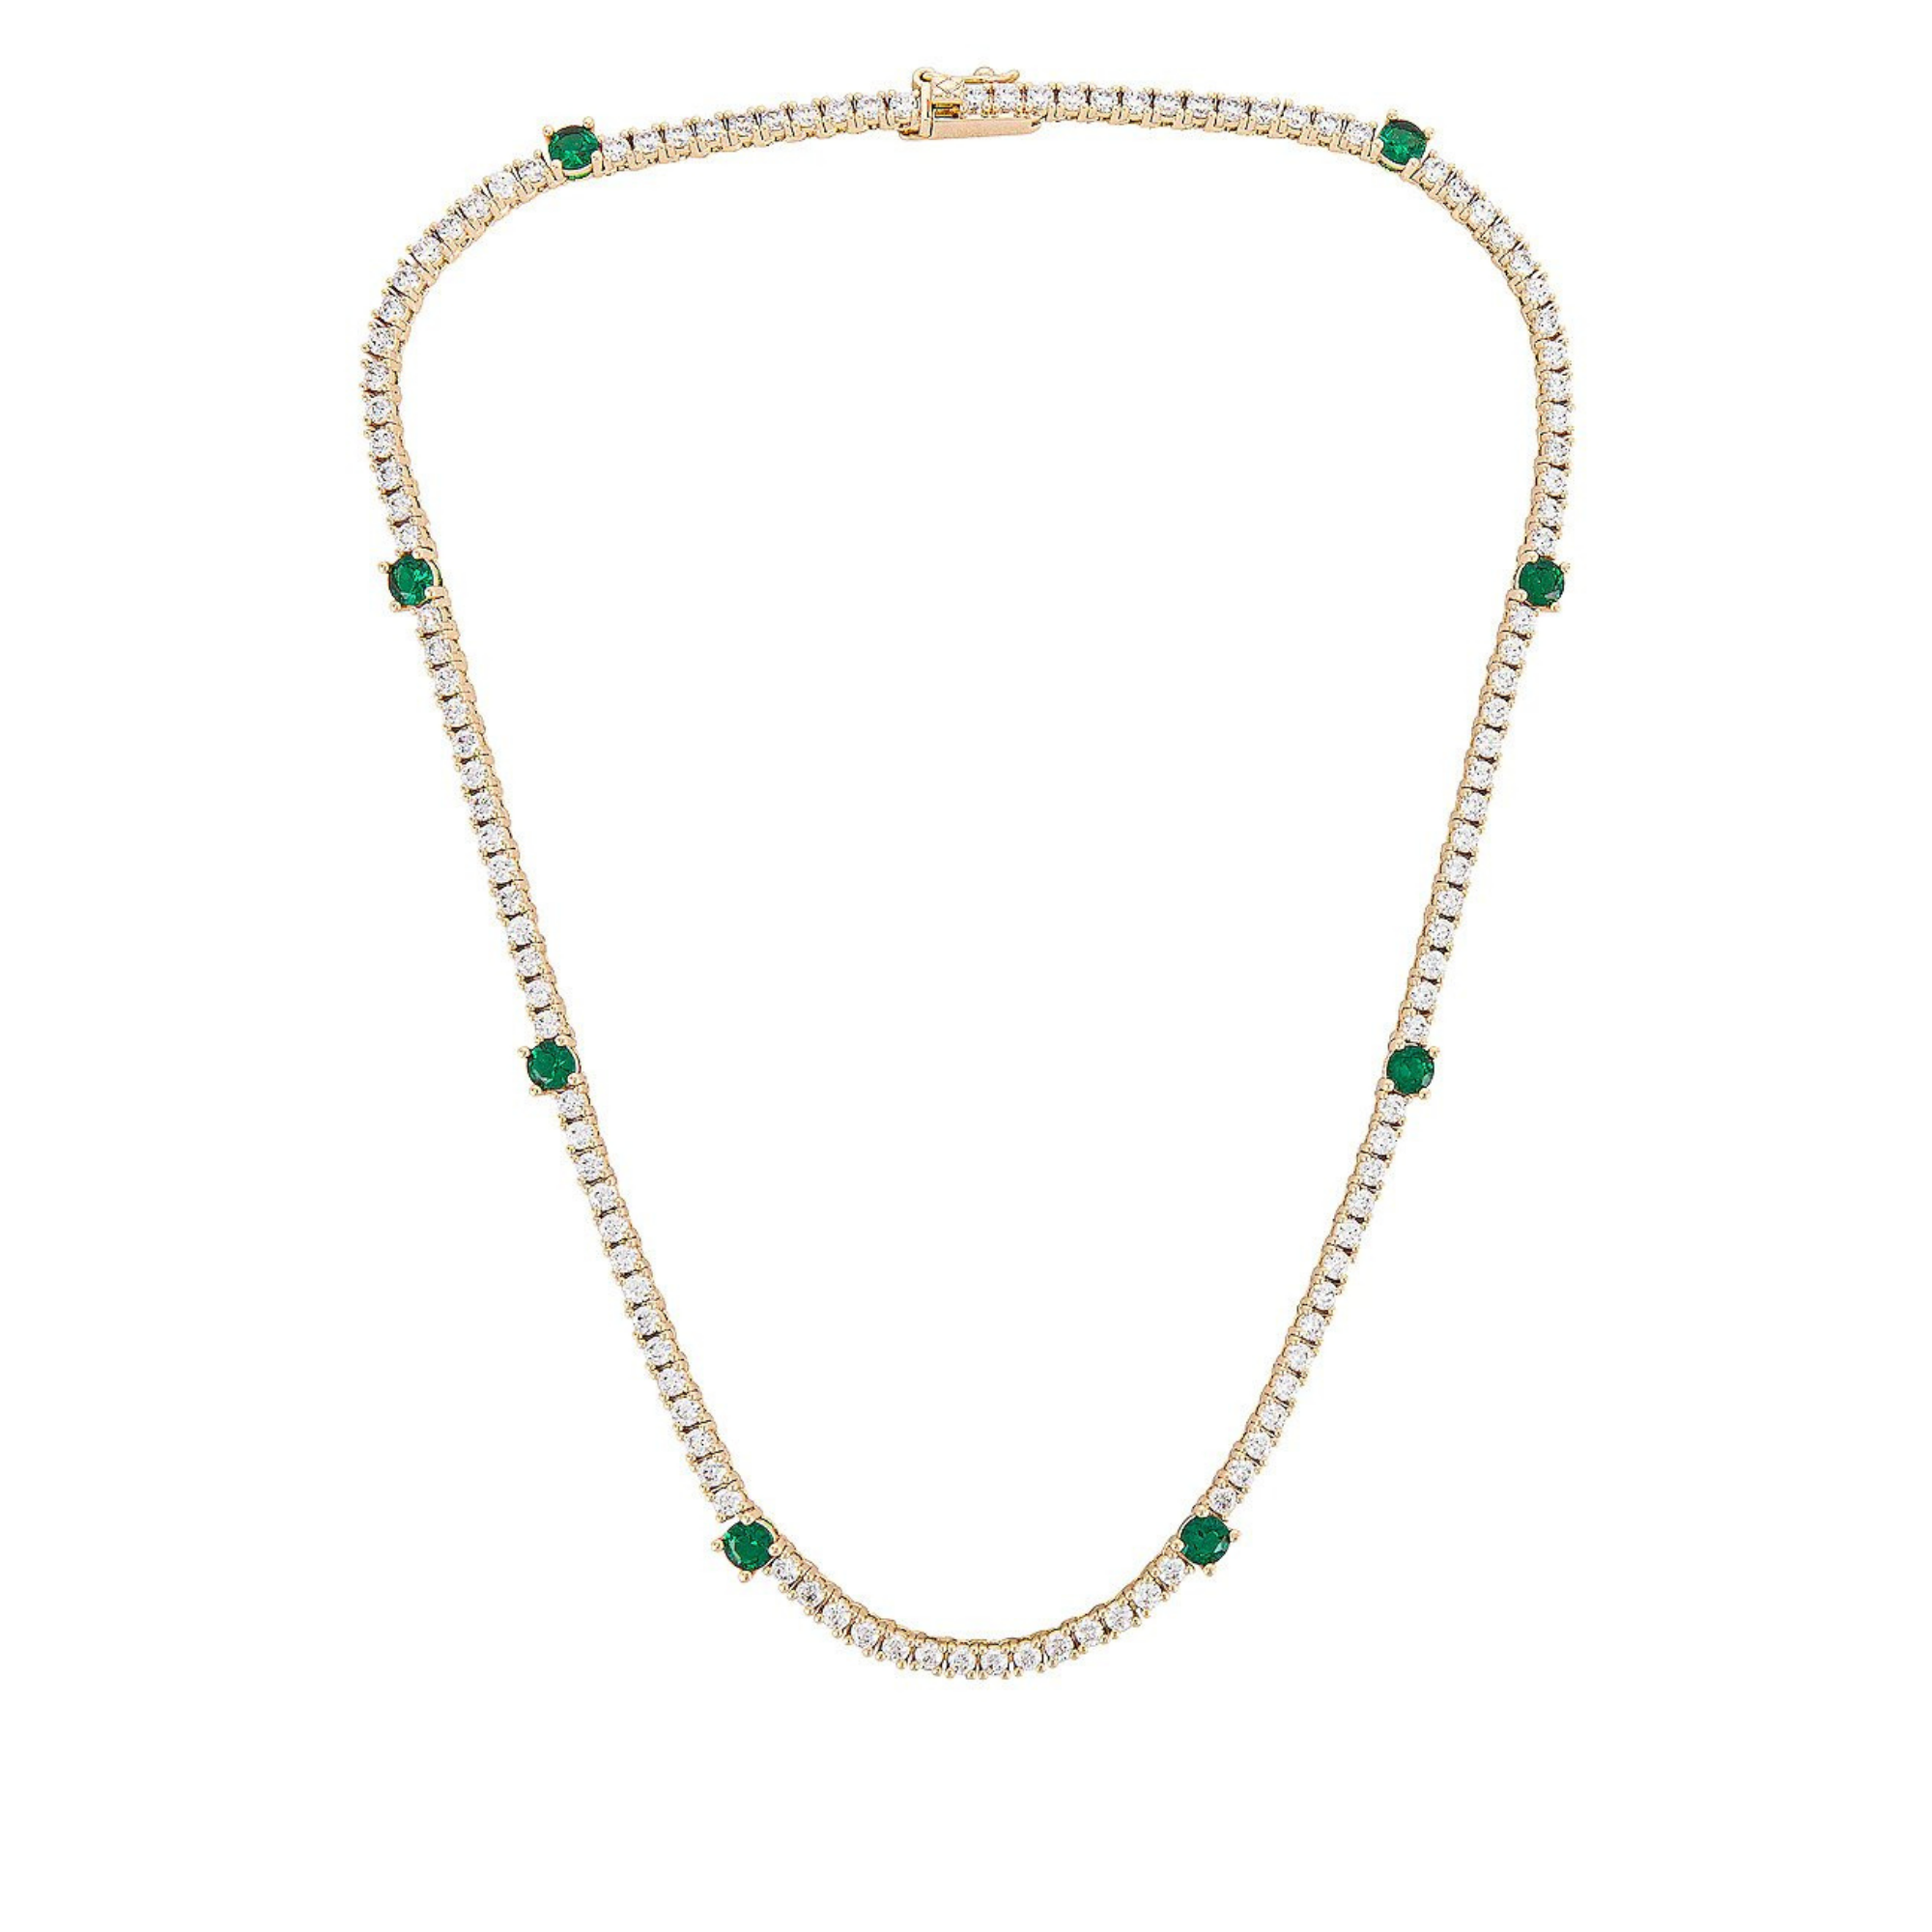 Lili Claspe Zoi Tennis Necklace, $195